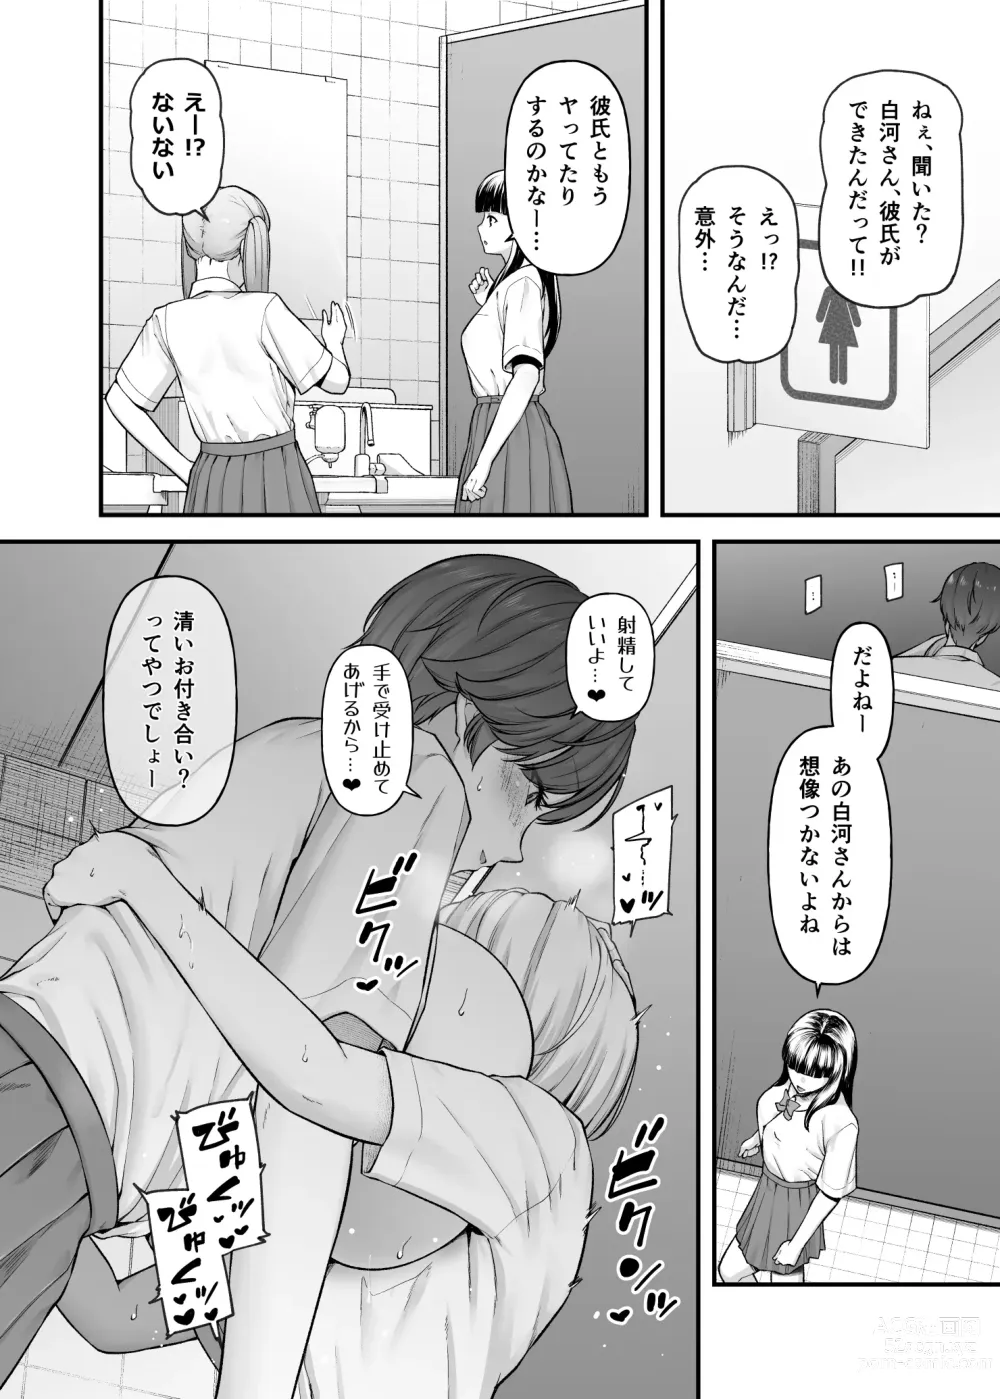 Page 33 of doujinshi Shirakawa Kazari wa Amaama Pudding Prince